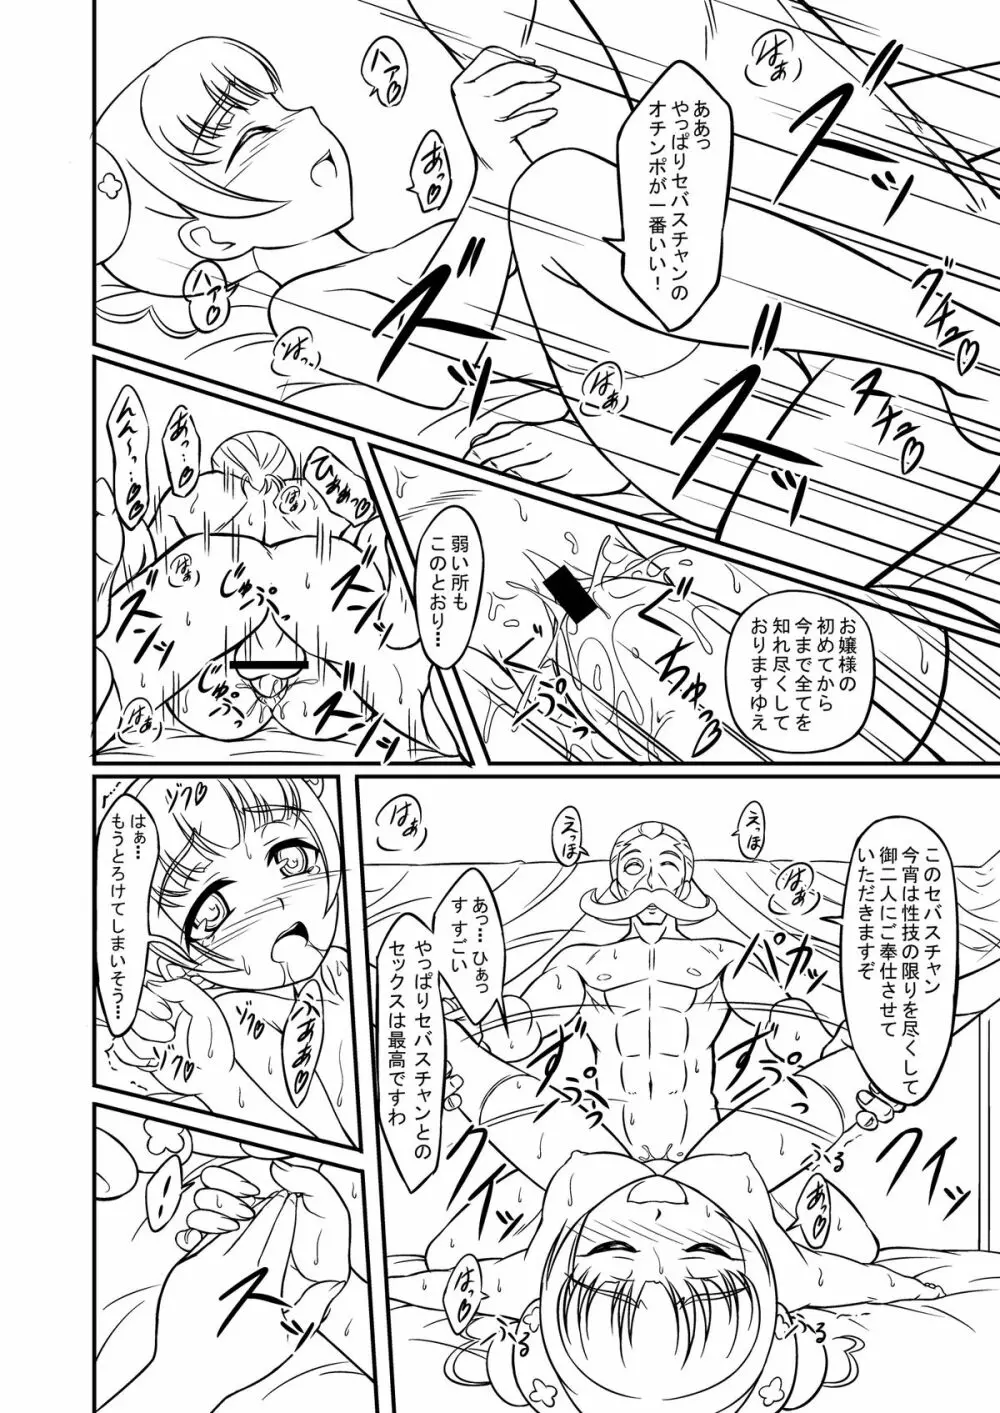 プリキュア特訓中! - page26